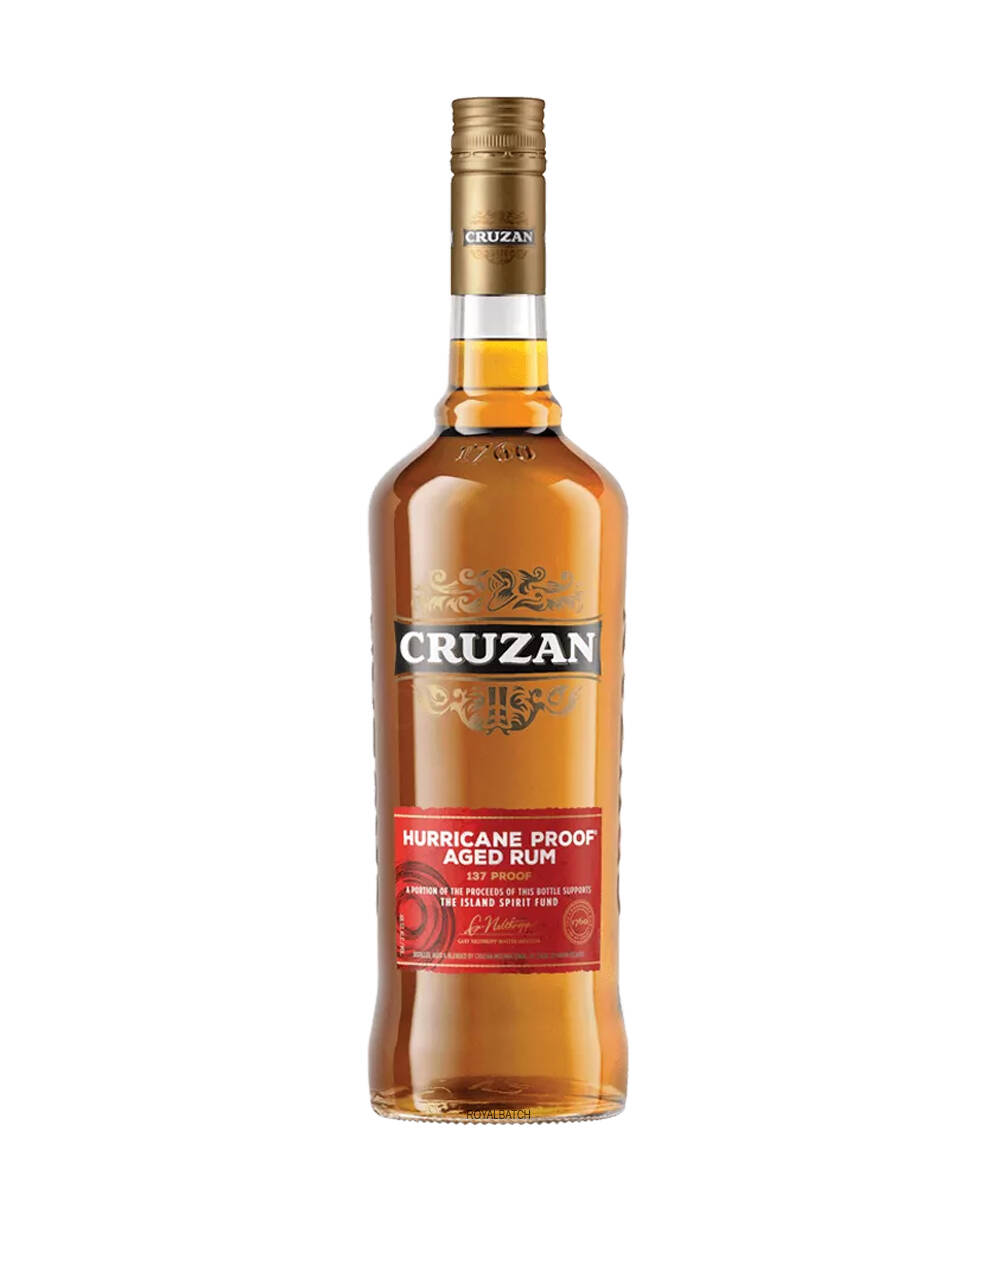 Cruzan Hurricane Proof Aged Rum